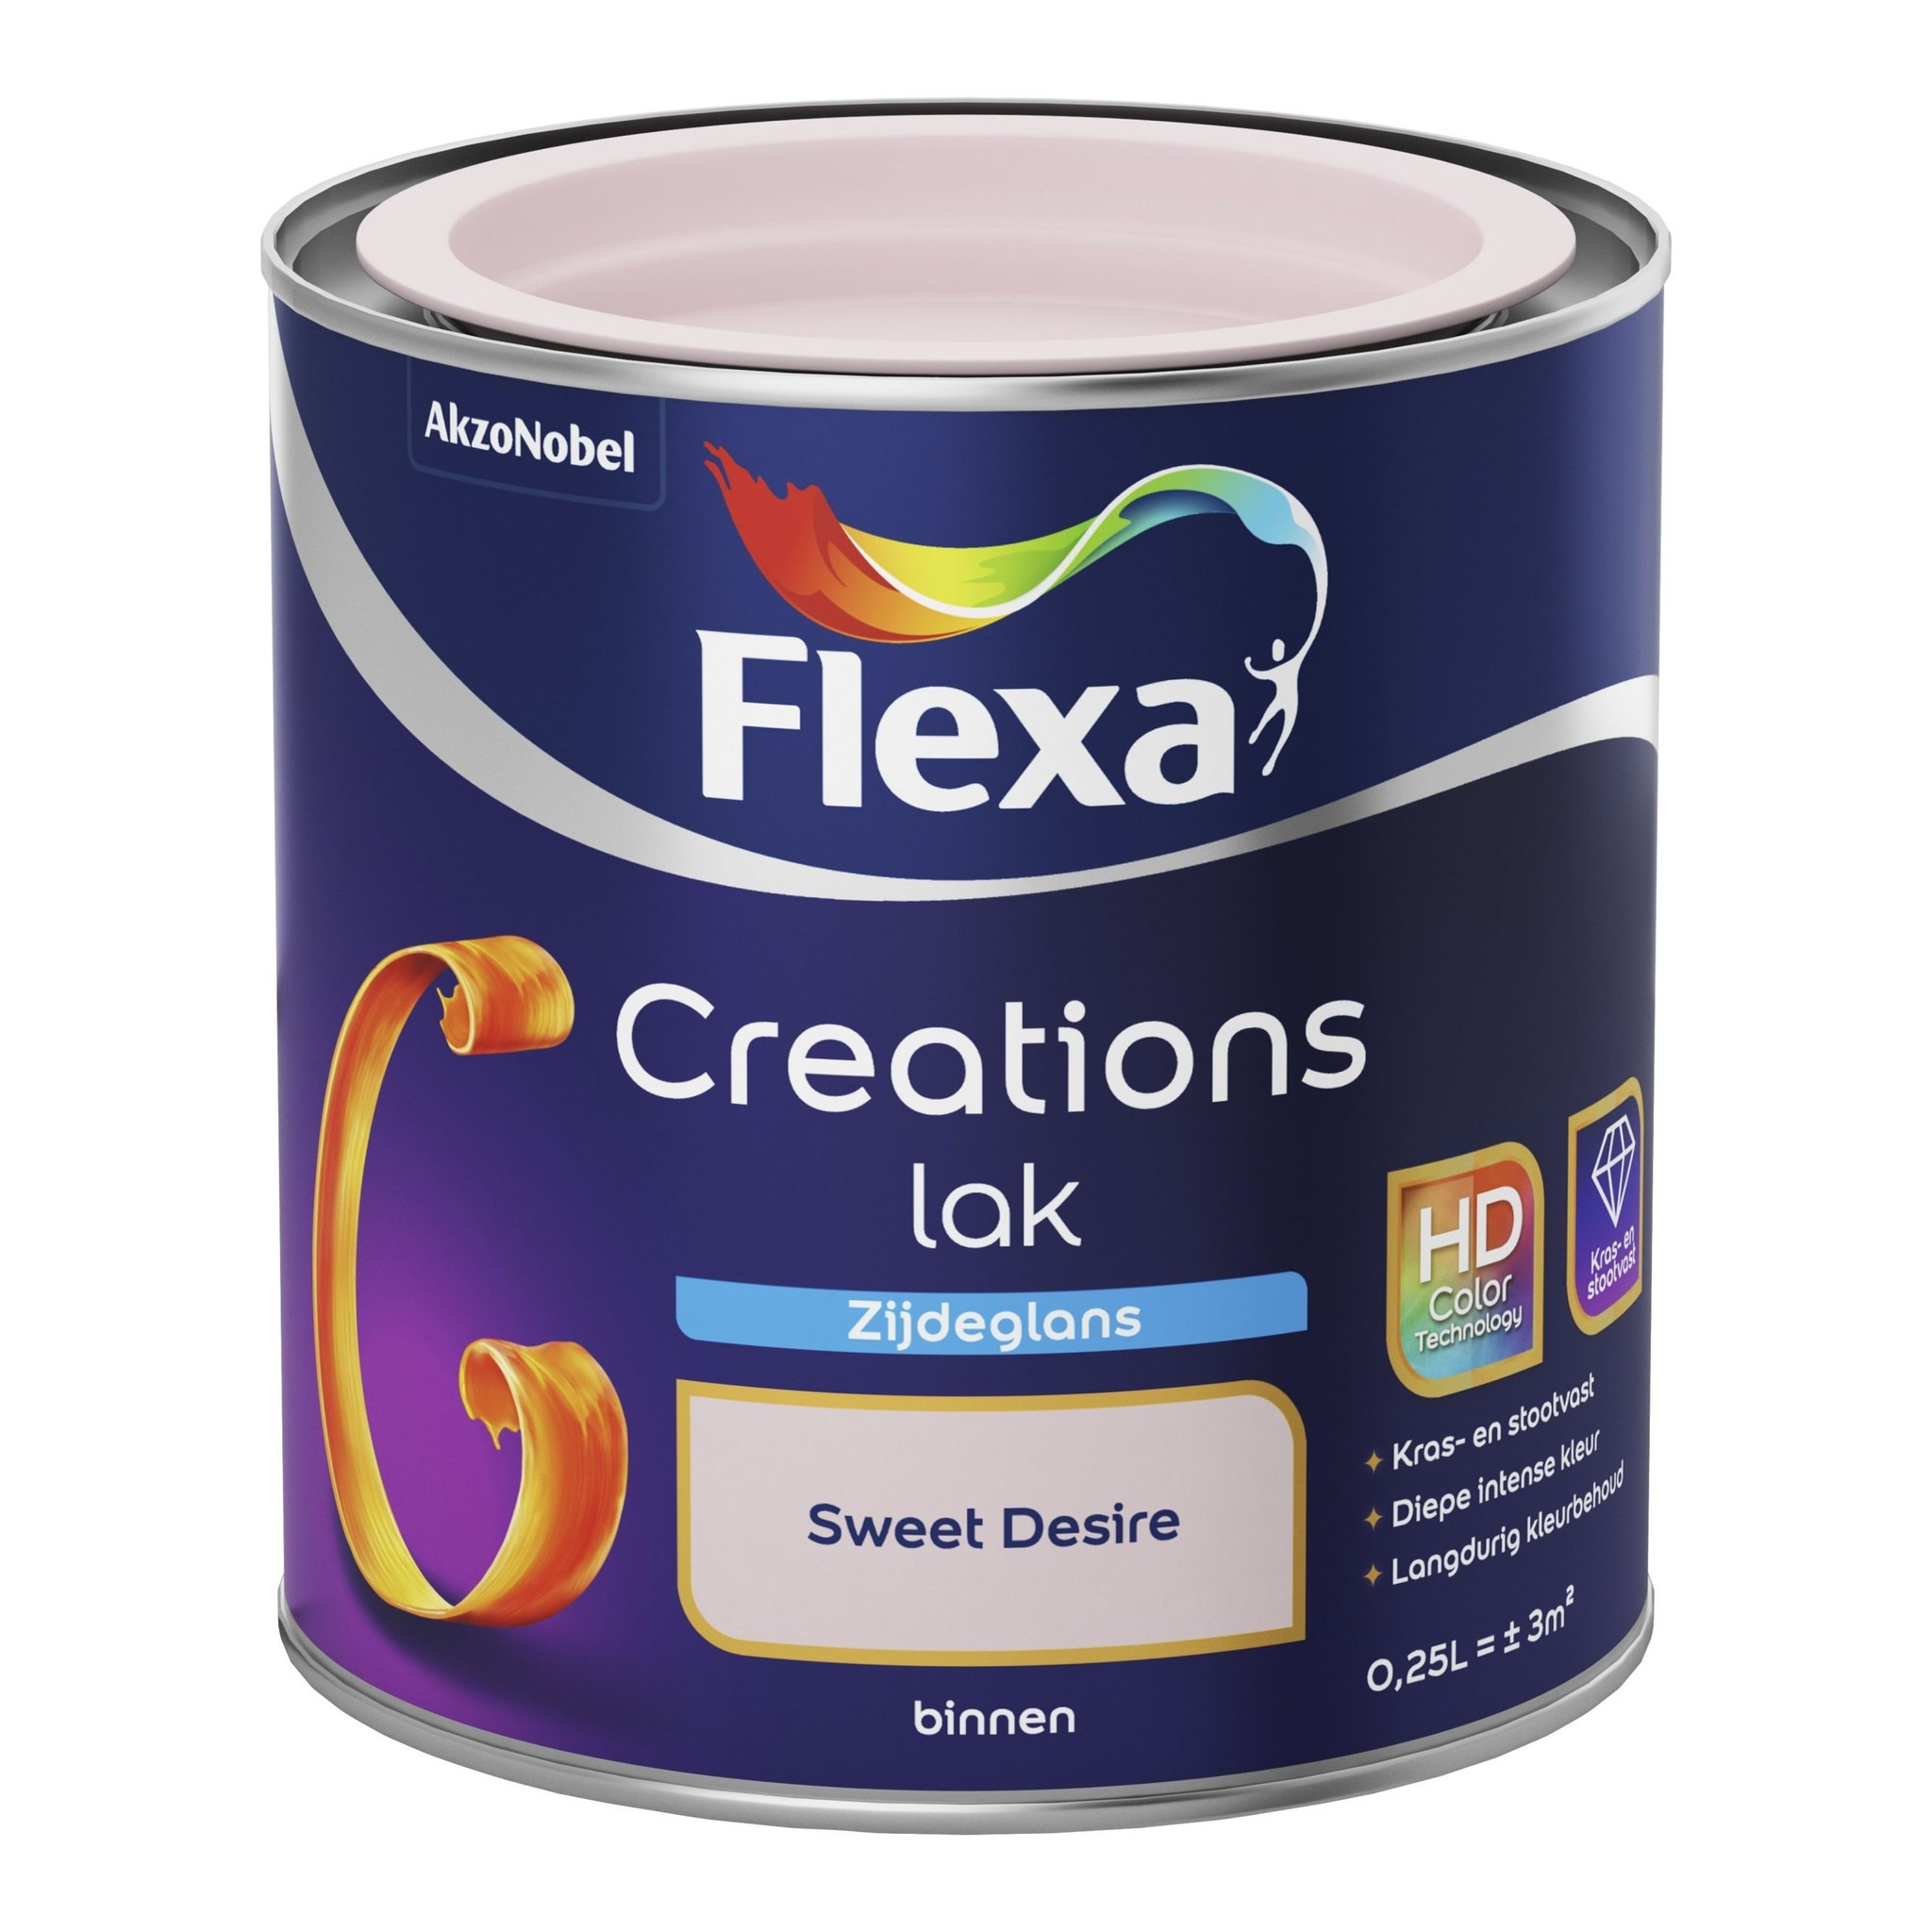 Flexa Creations Lak Zijdeglans - Sweet Desire